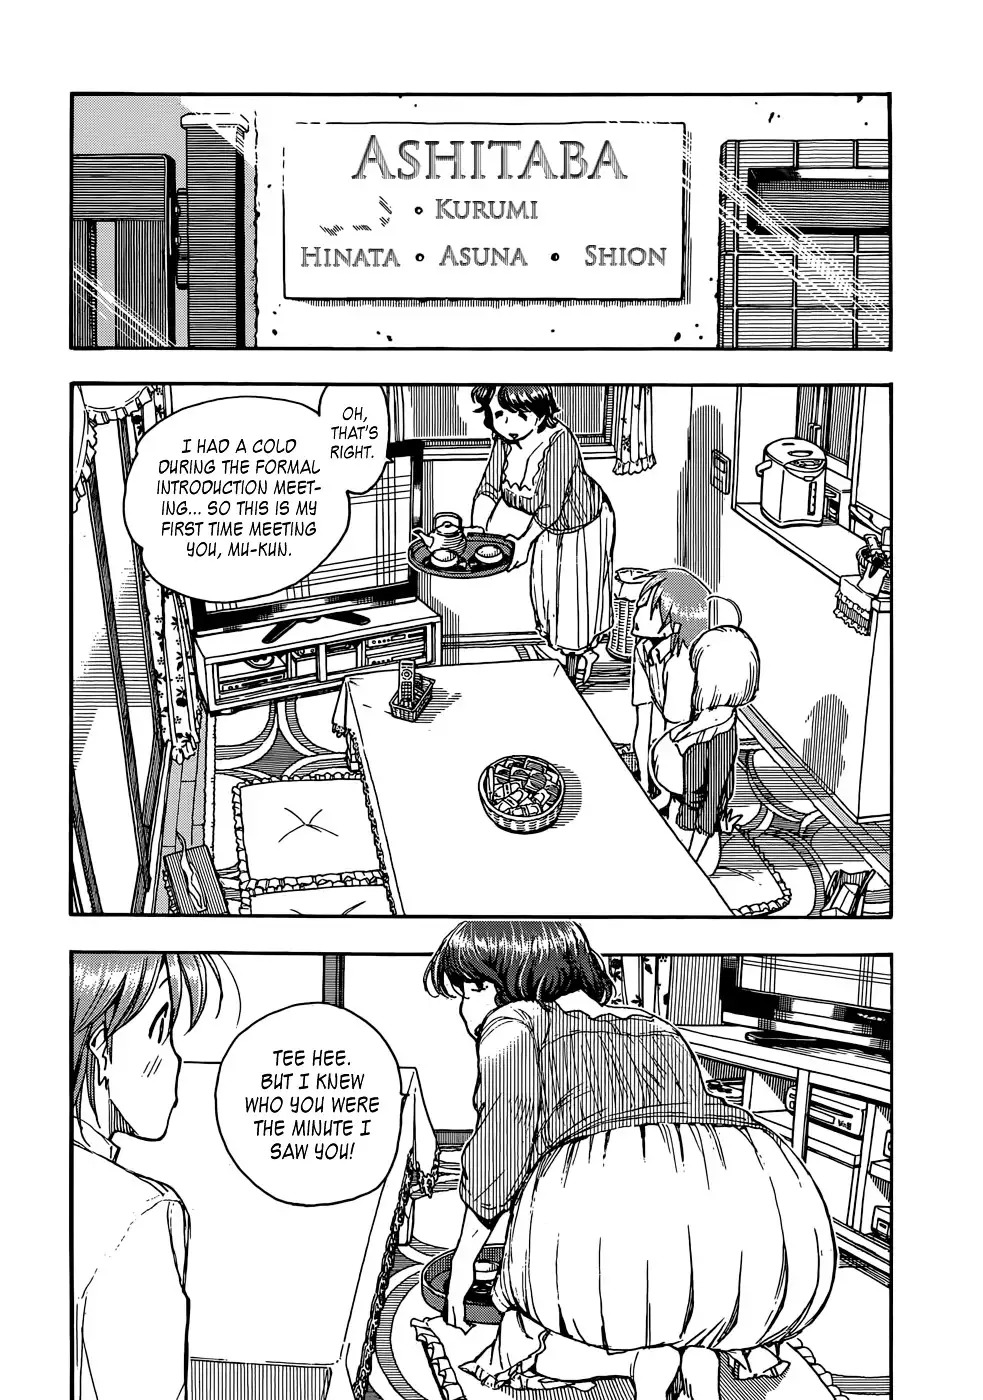 Ashitaba-san Chi no Mukogurashi - Chapter 1 Page 10